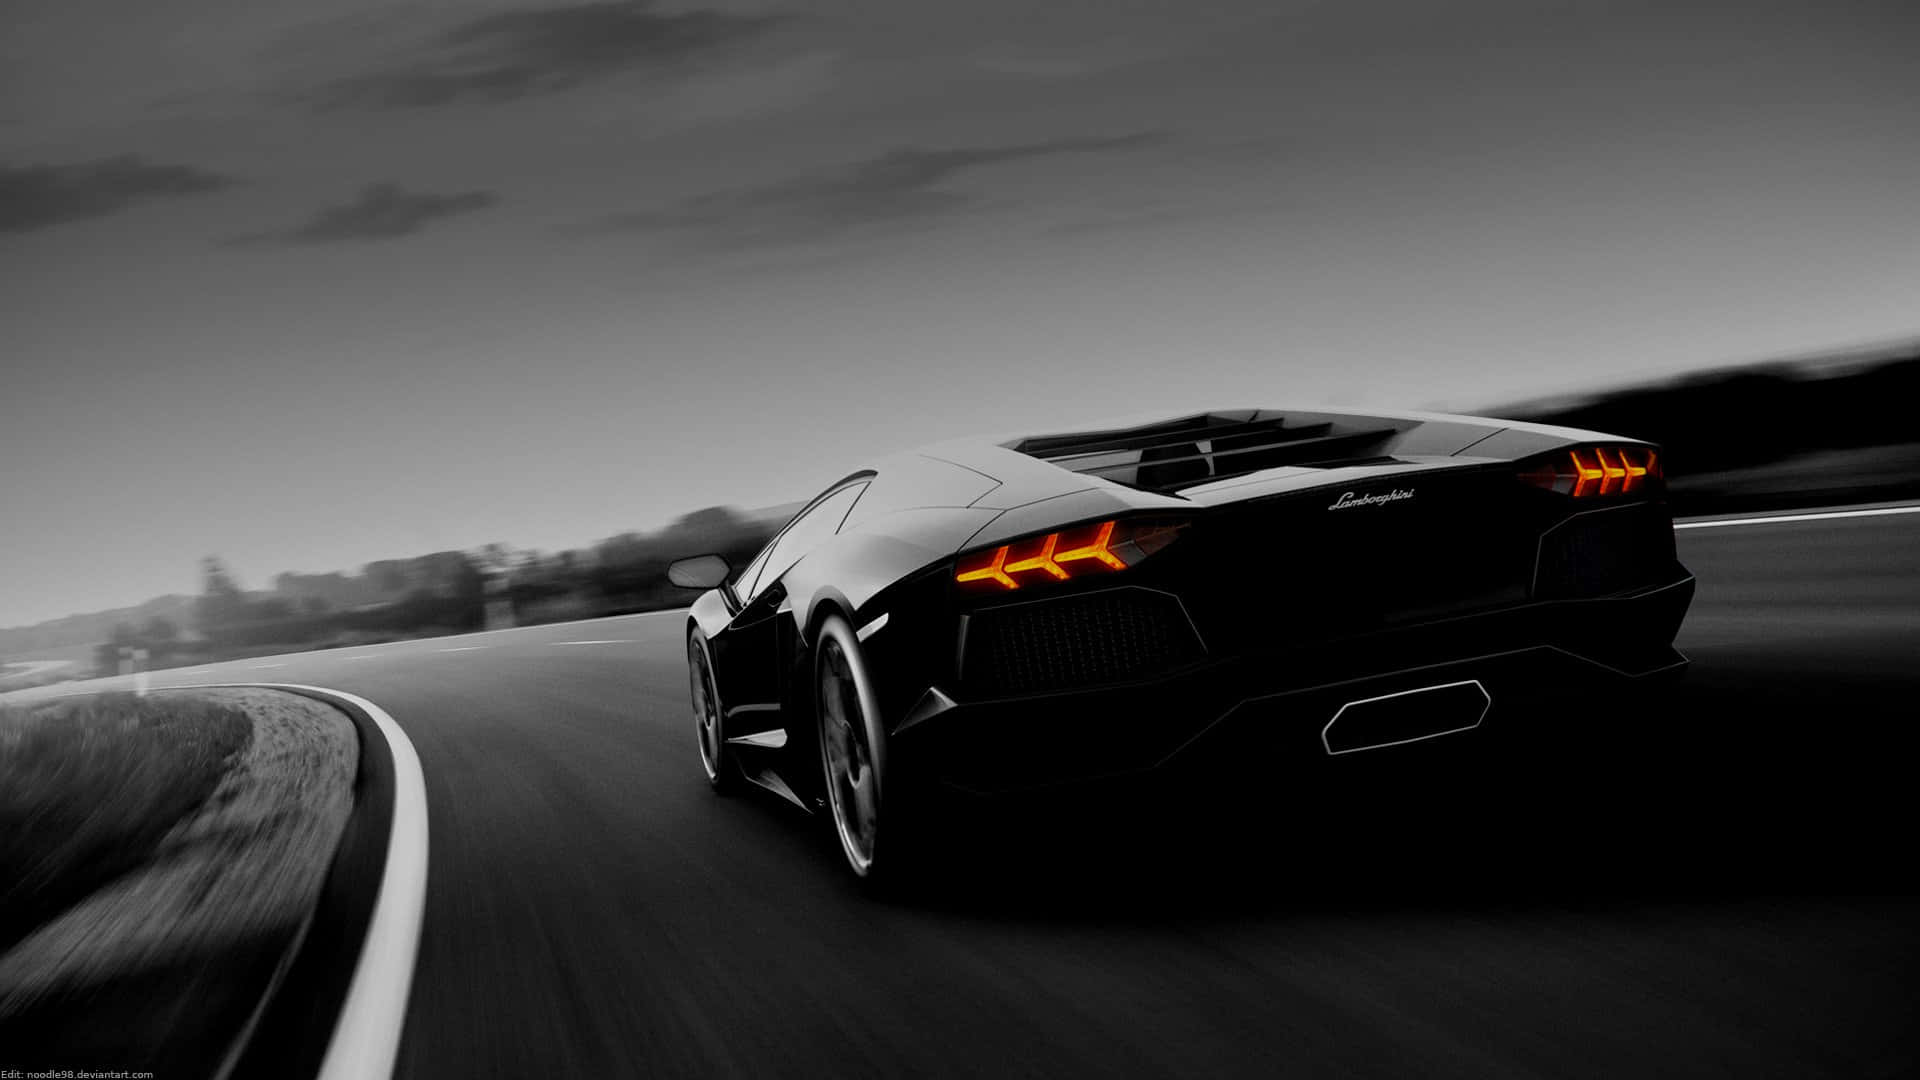 Levandebil Lamborghini Aventador I Svart På Datorn Eller Mobilens Bakgrundsbild. Wallpaper